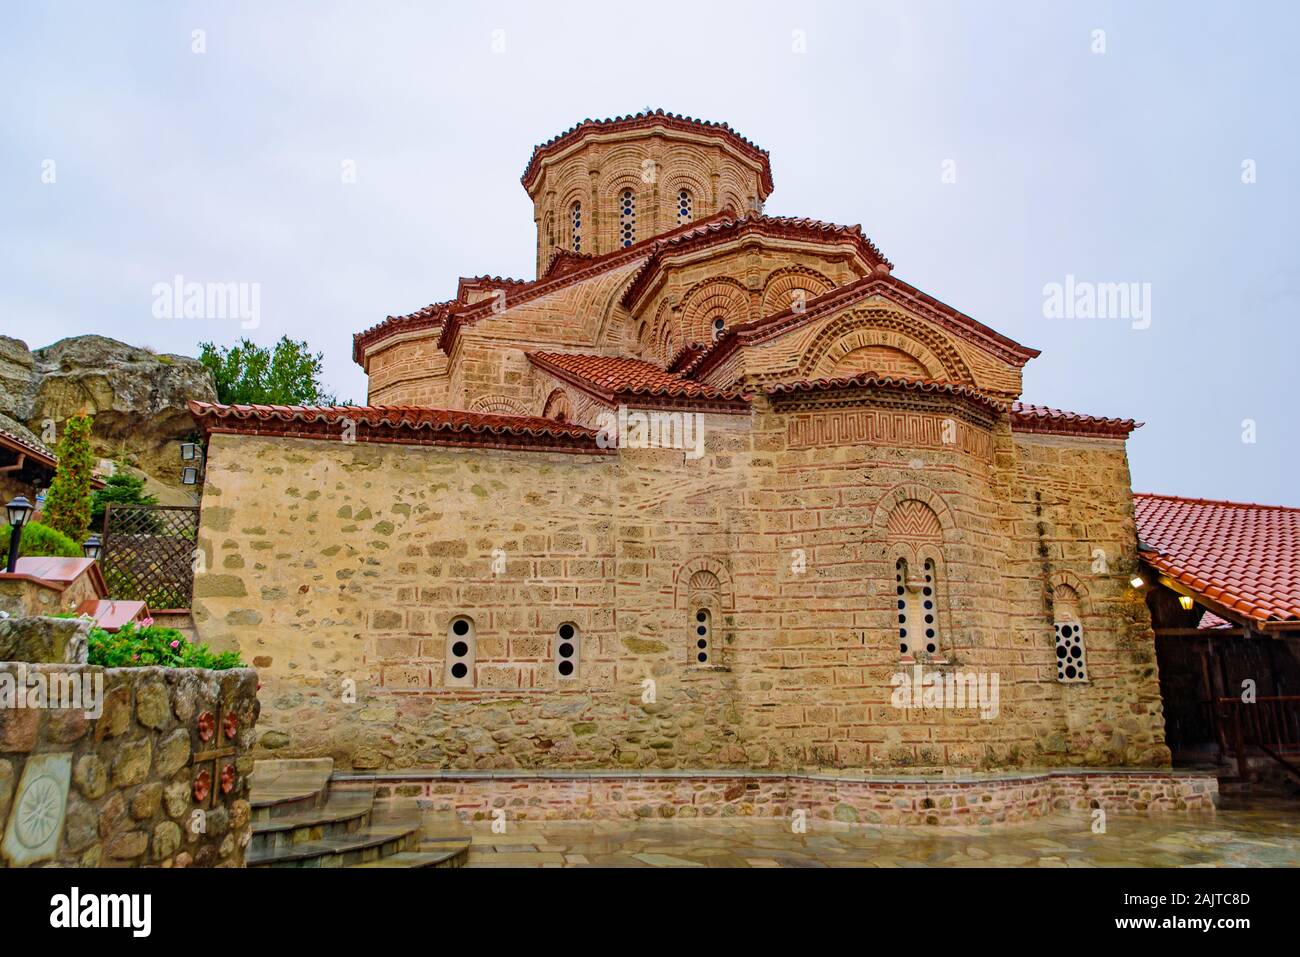 Monastère orthodoxe de l'est dans la région de météores, Grèce Banque D'Images